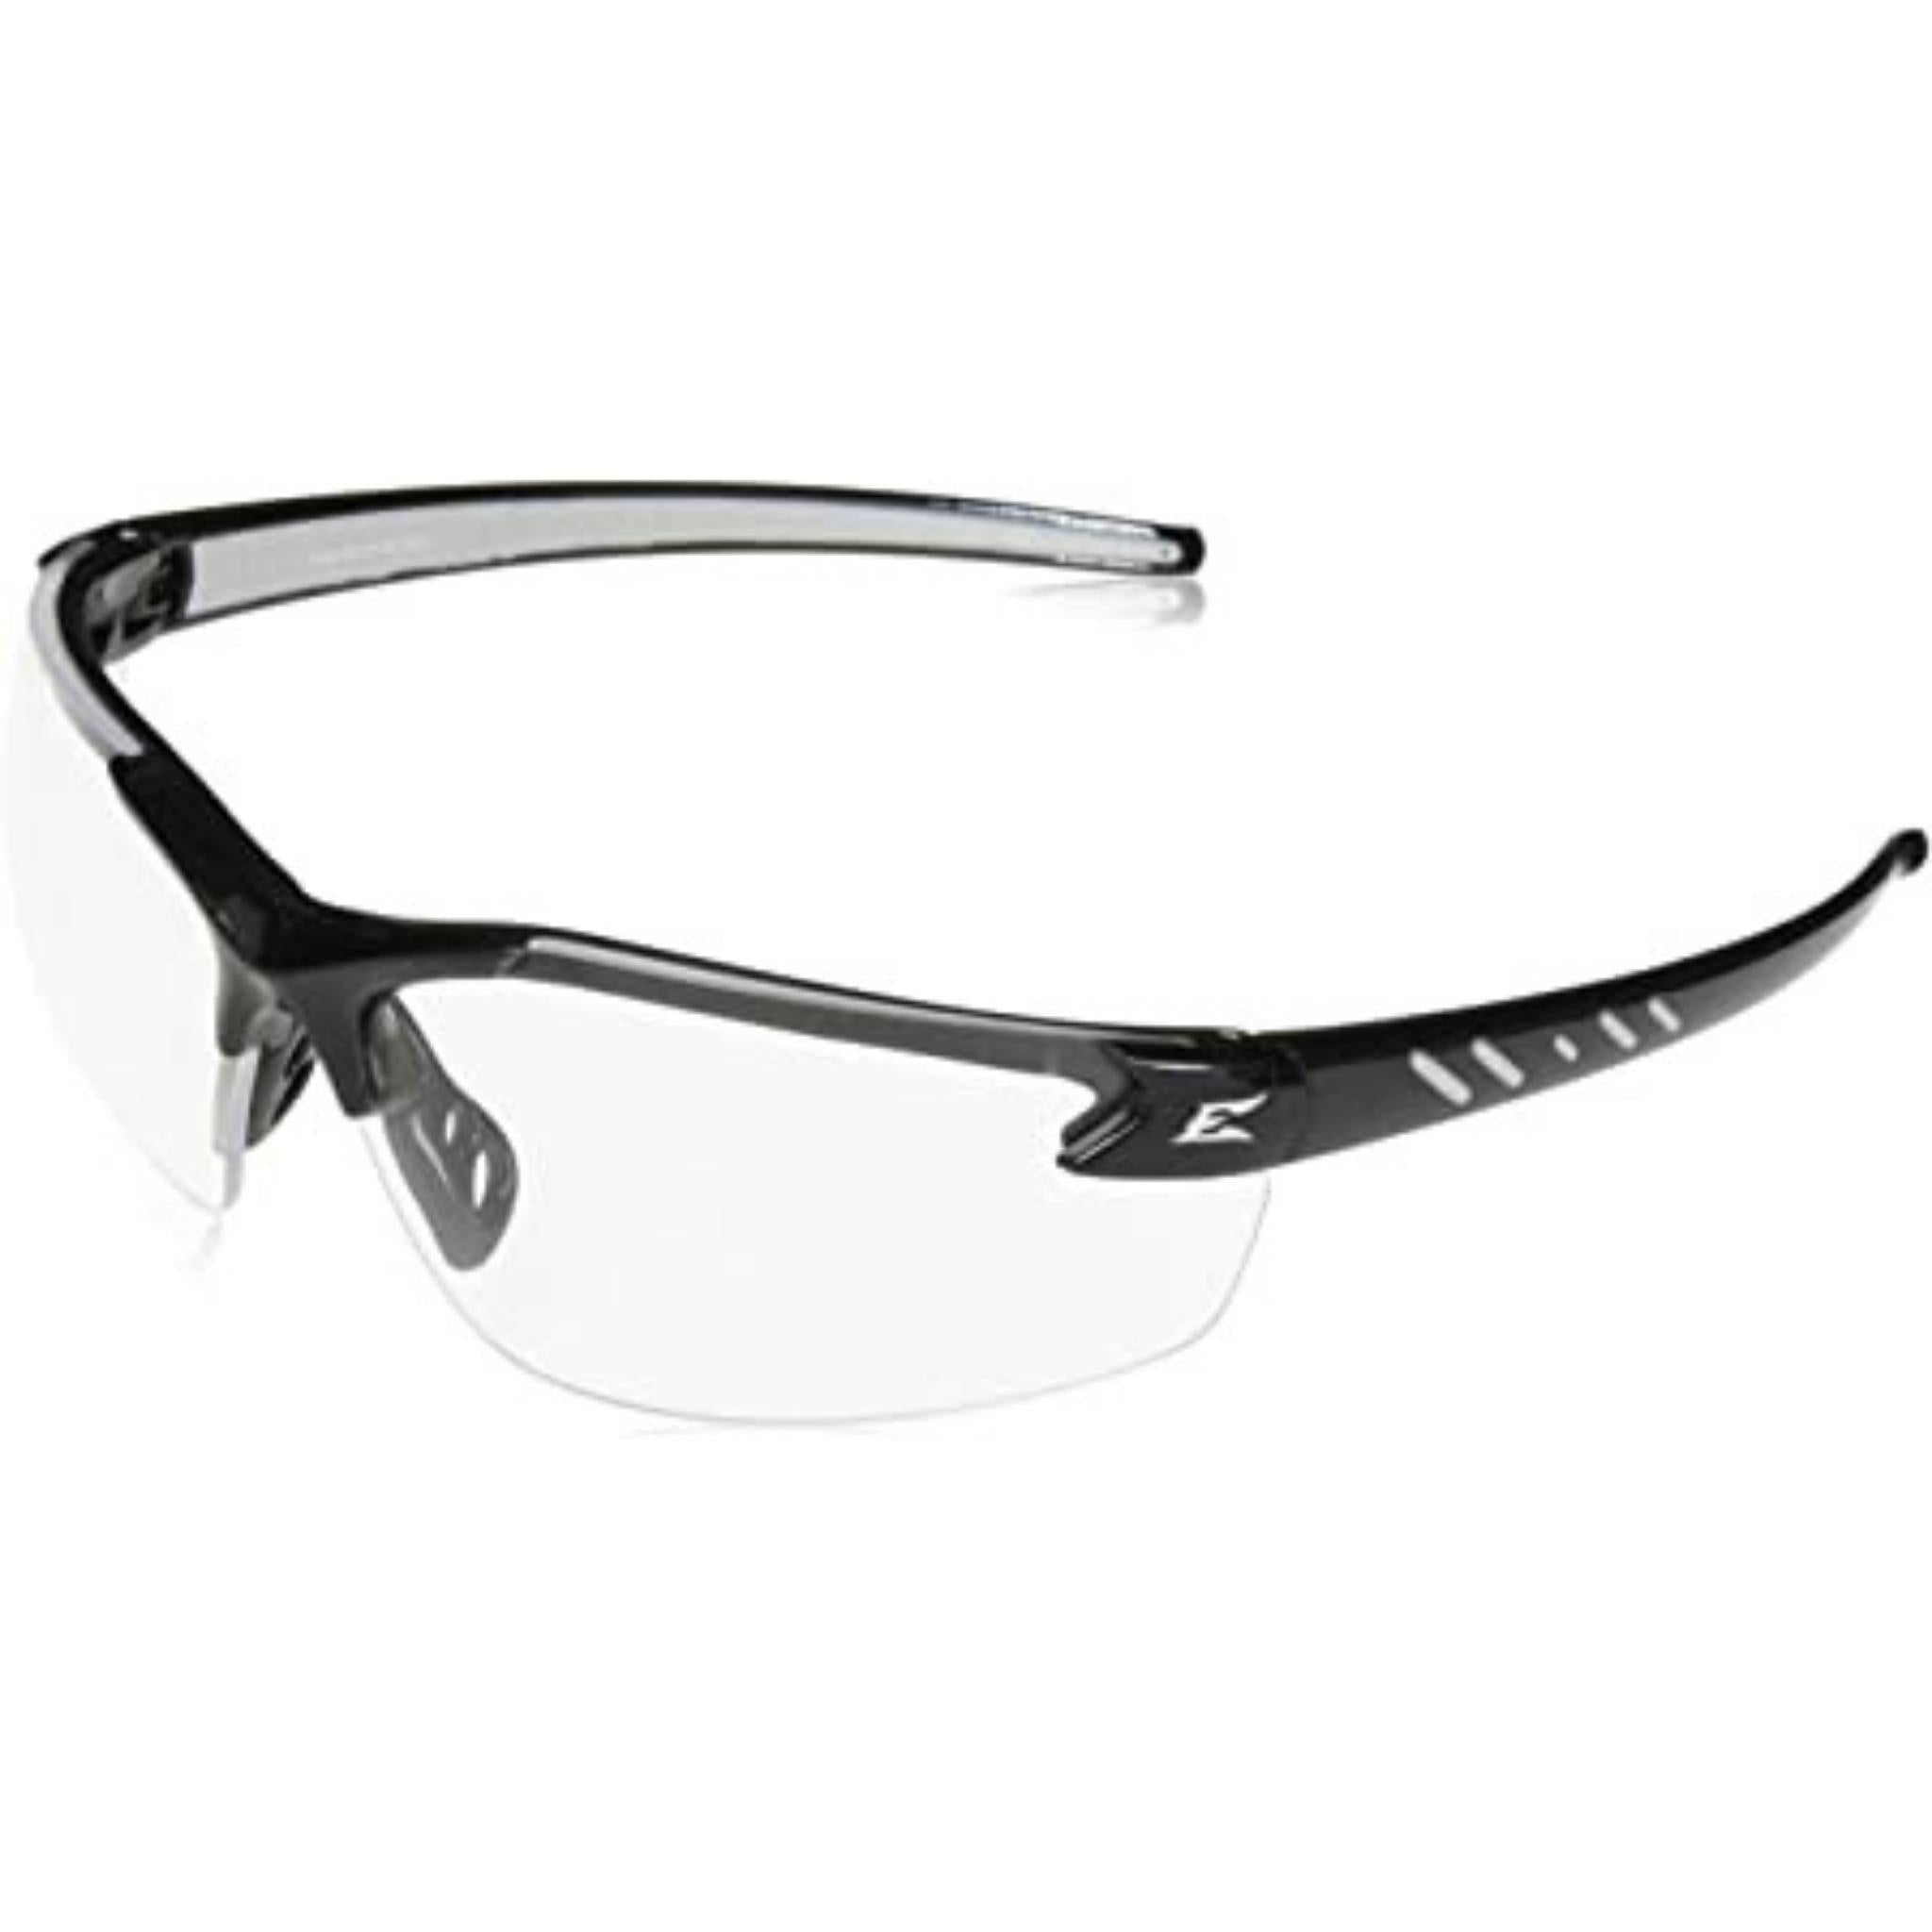 Edge SW111VS Dakura Safety Glasses - Black Frame - Clear Vapor Shield Anti-Fog Lens